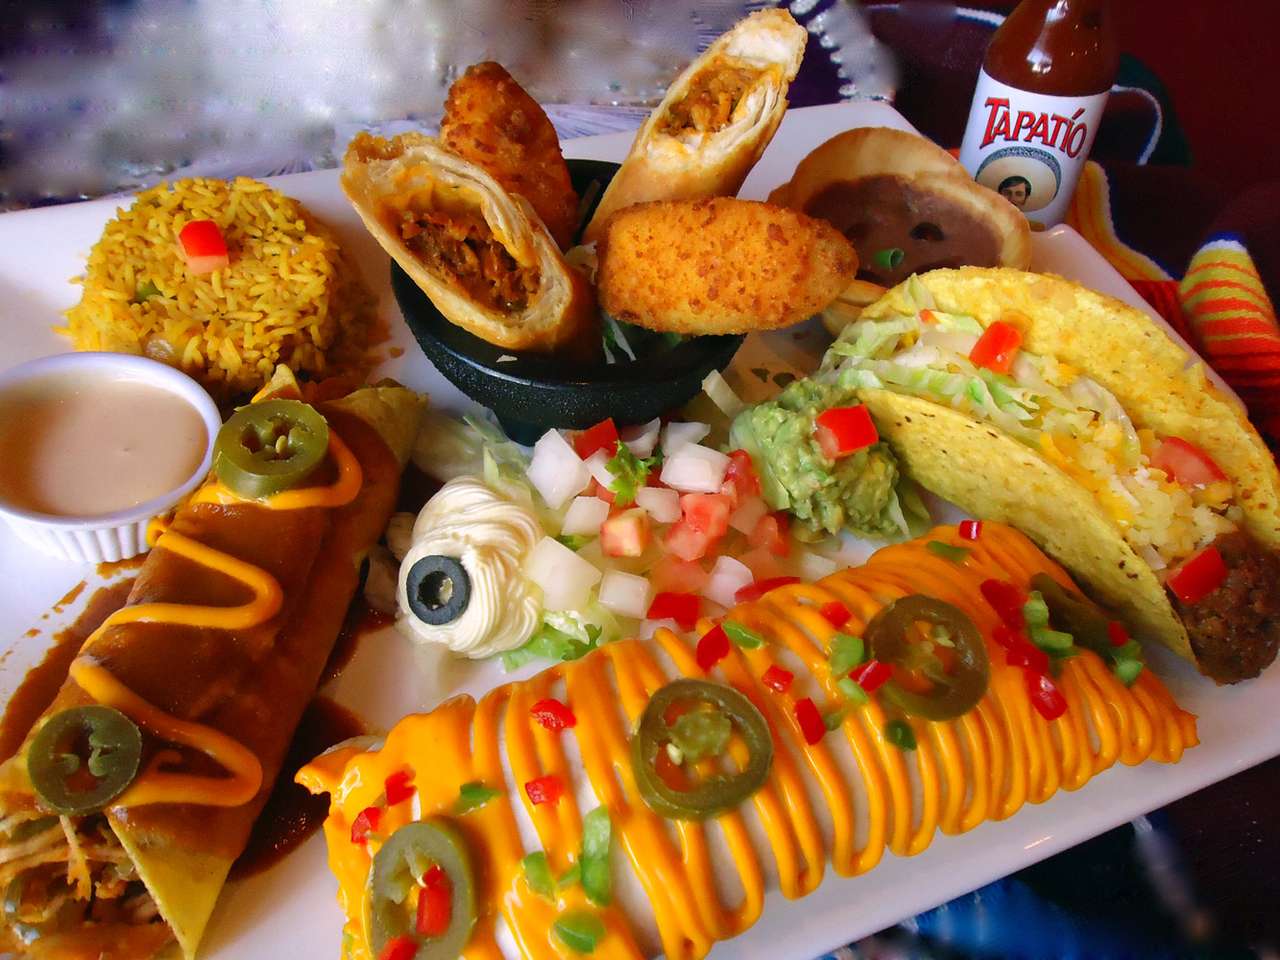 Еда в техасско-мексиканском стиле онлайн-пазл